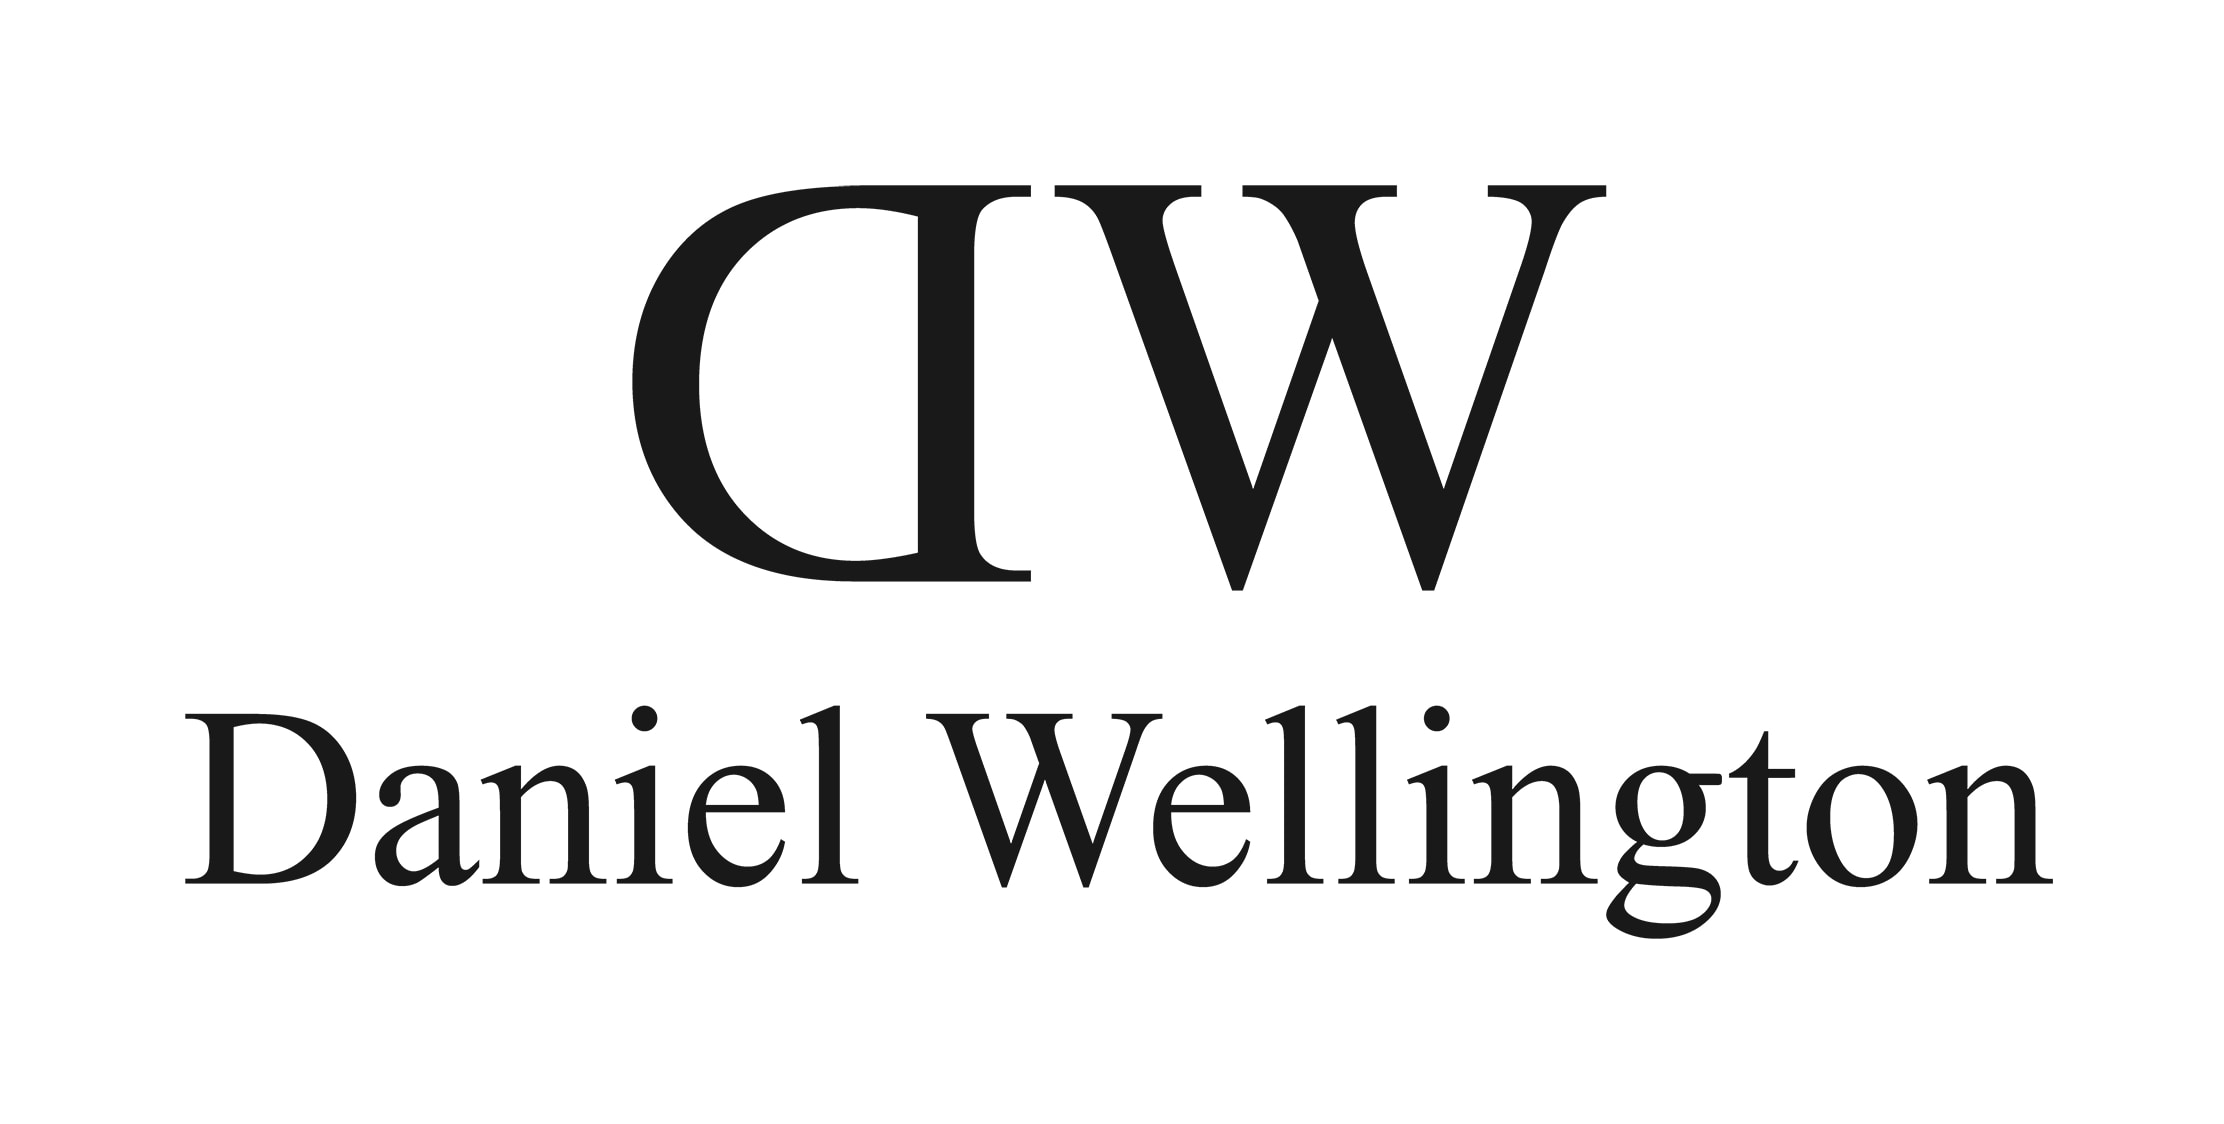 daniel-wellington logo.jpg